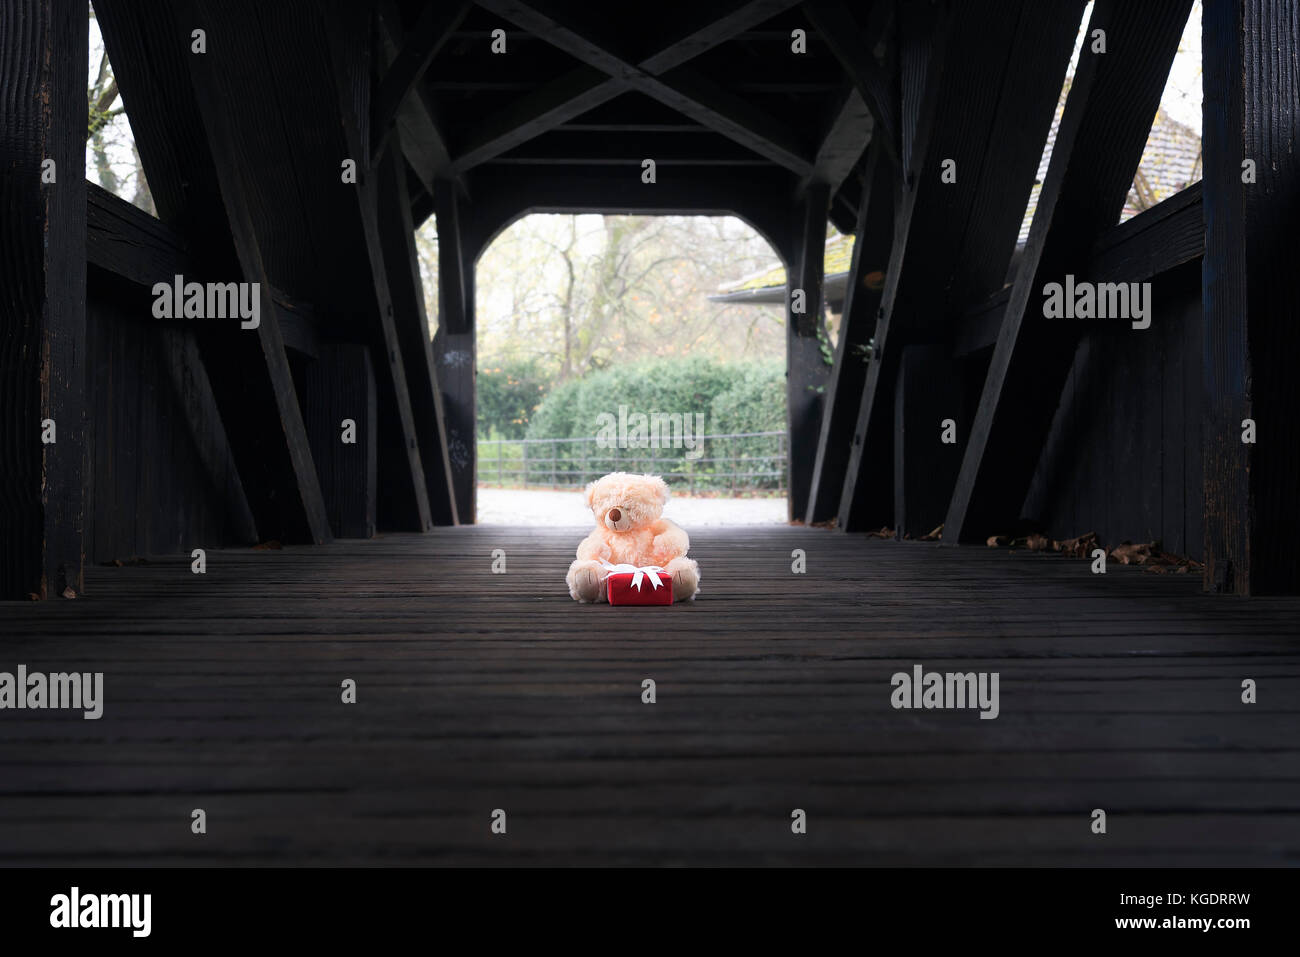 Süße Plüsch Bär Spielzeug und einem Geschenkkarton in rot Papier gewickelt und mit weißem Band und Bogen gebunden, in der Mitte eine überdachte Holzbrücke sitzt und wartet. Stockfoto